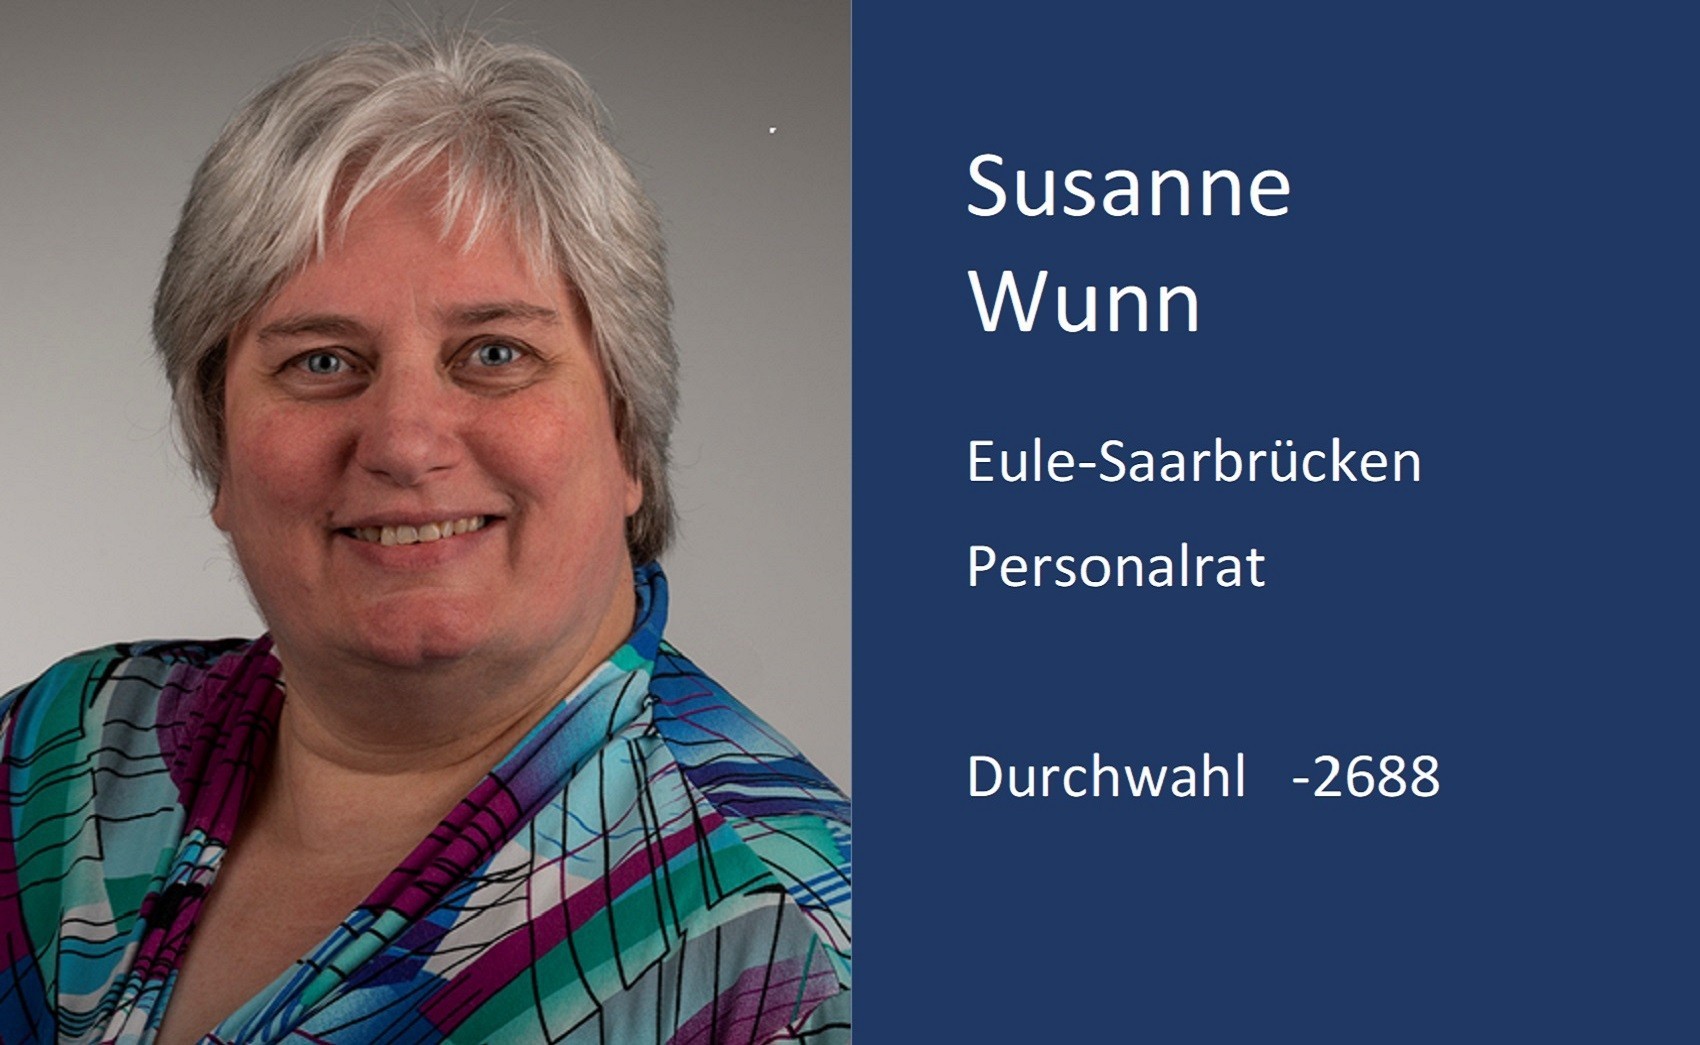 Susanne Wunn, Kontaktdaten, Durchwahl, 2 6 8 8, Email, p r v t p ät m x.uni minus saarland . d e